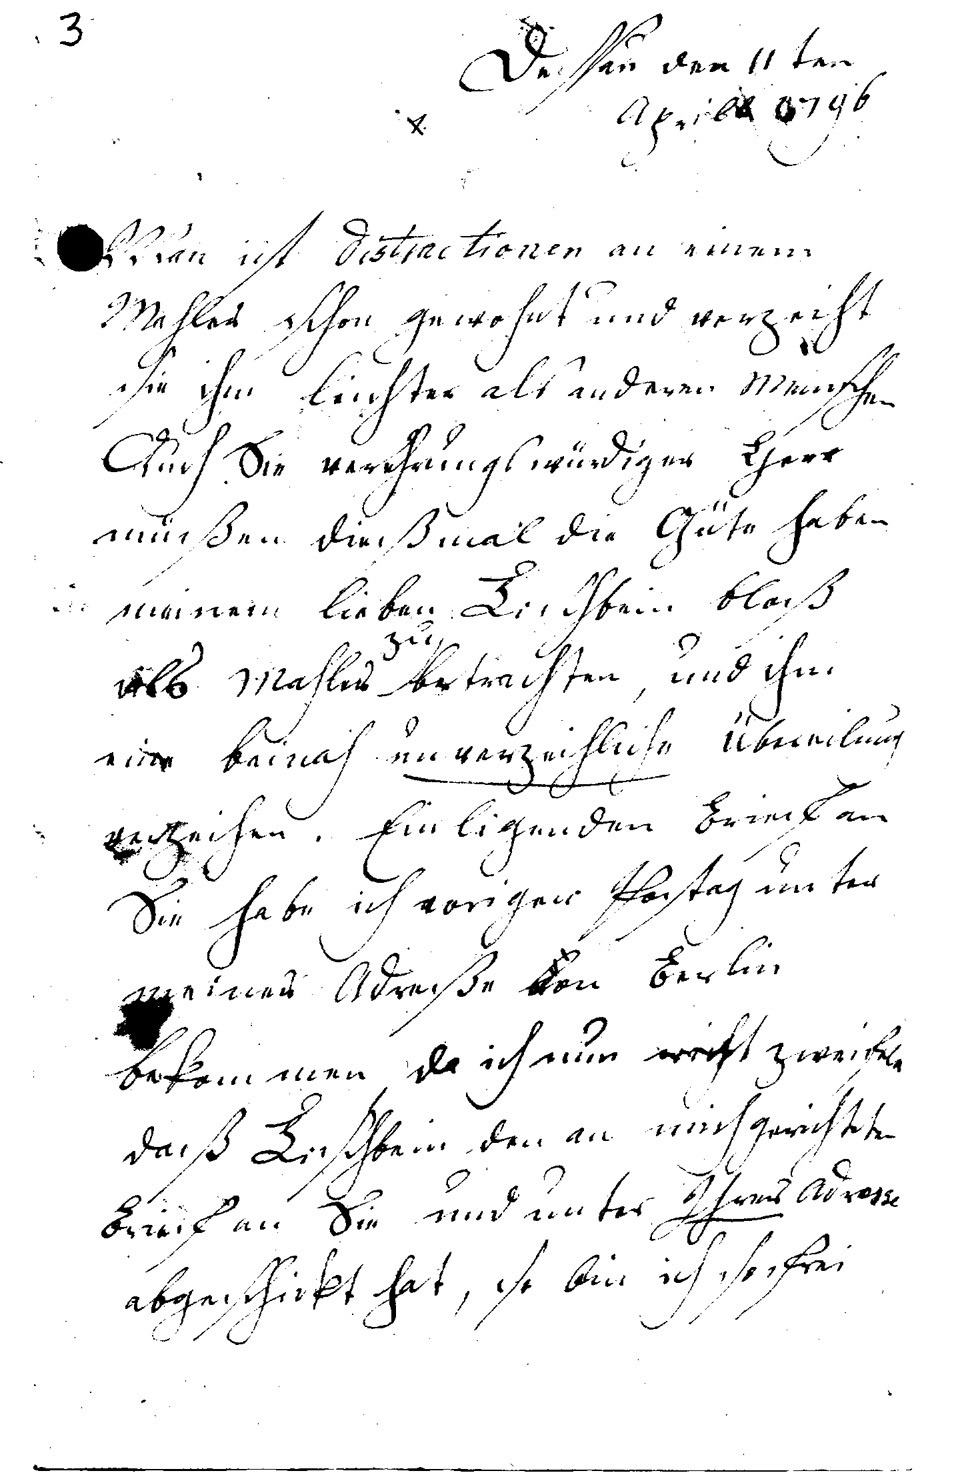 Brief Sophie Tischbeins (Gattin von J. F. A. Tischbein) an J.W.L. Gleim vom 11. April 1796 (Gleimhaus Halberstadt CC BY-NC-SA)